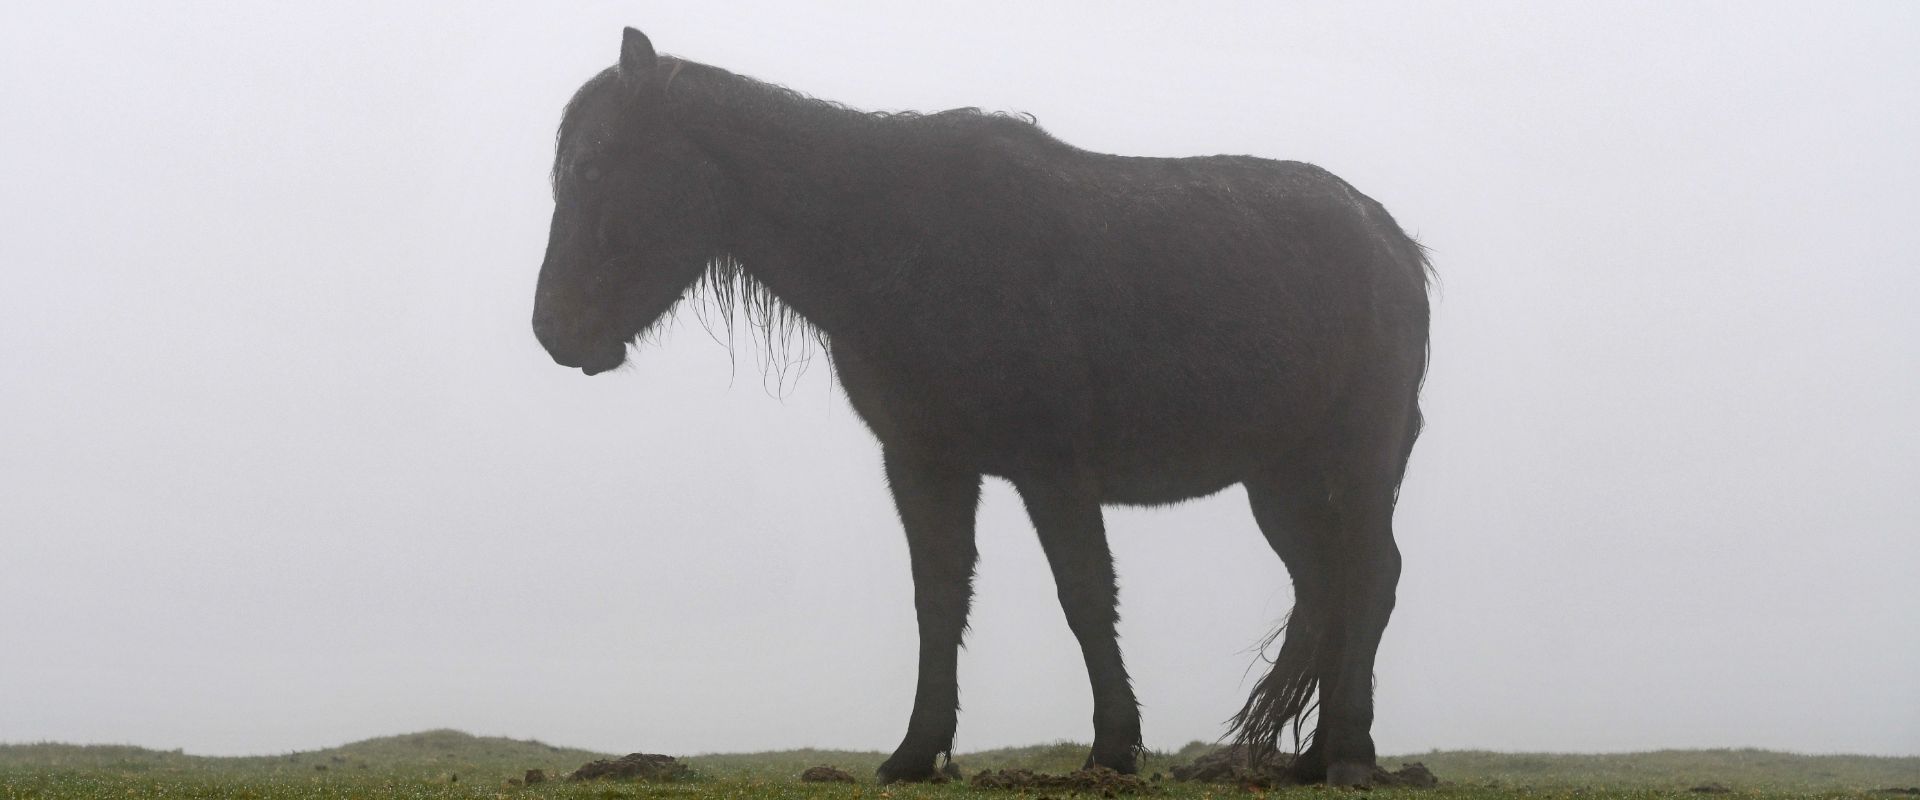 Dartmoor Pony in the mist